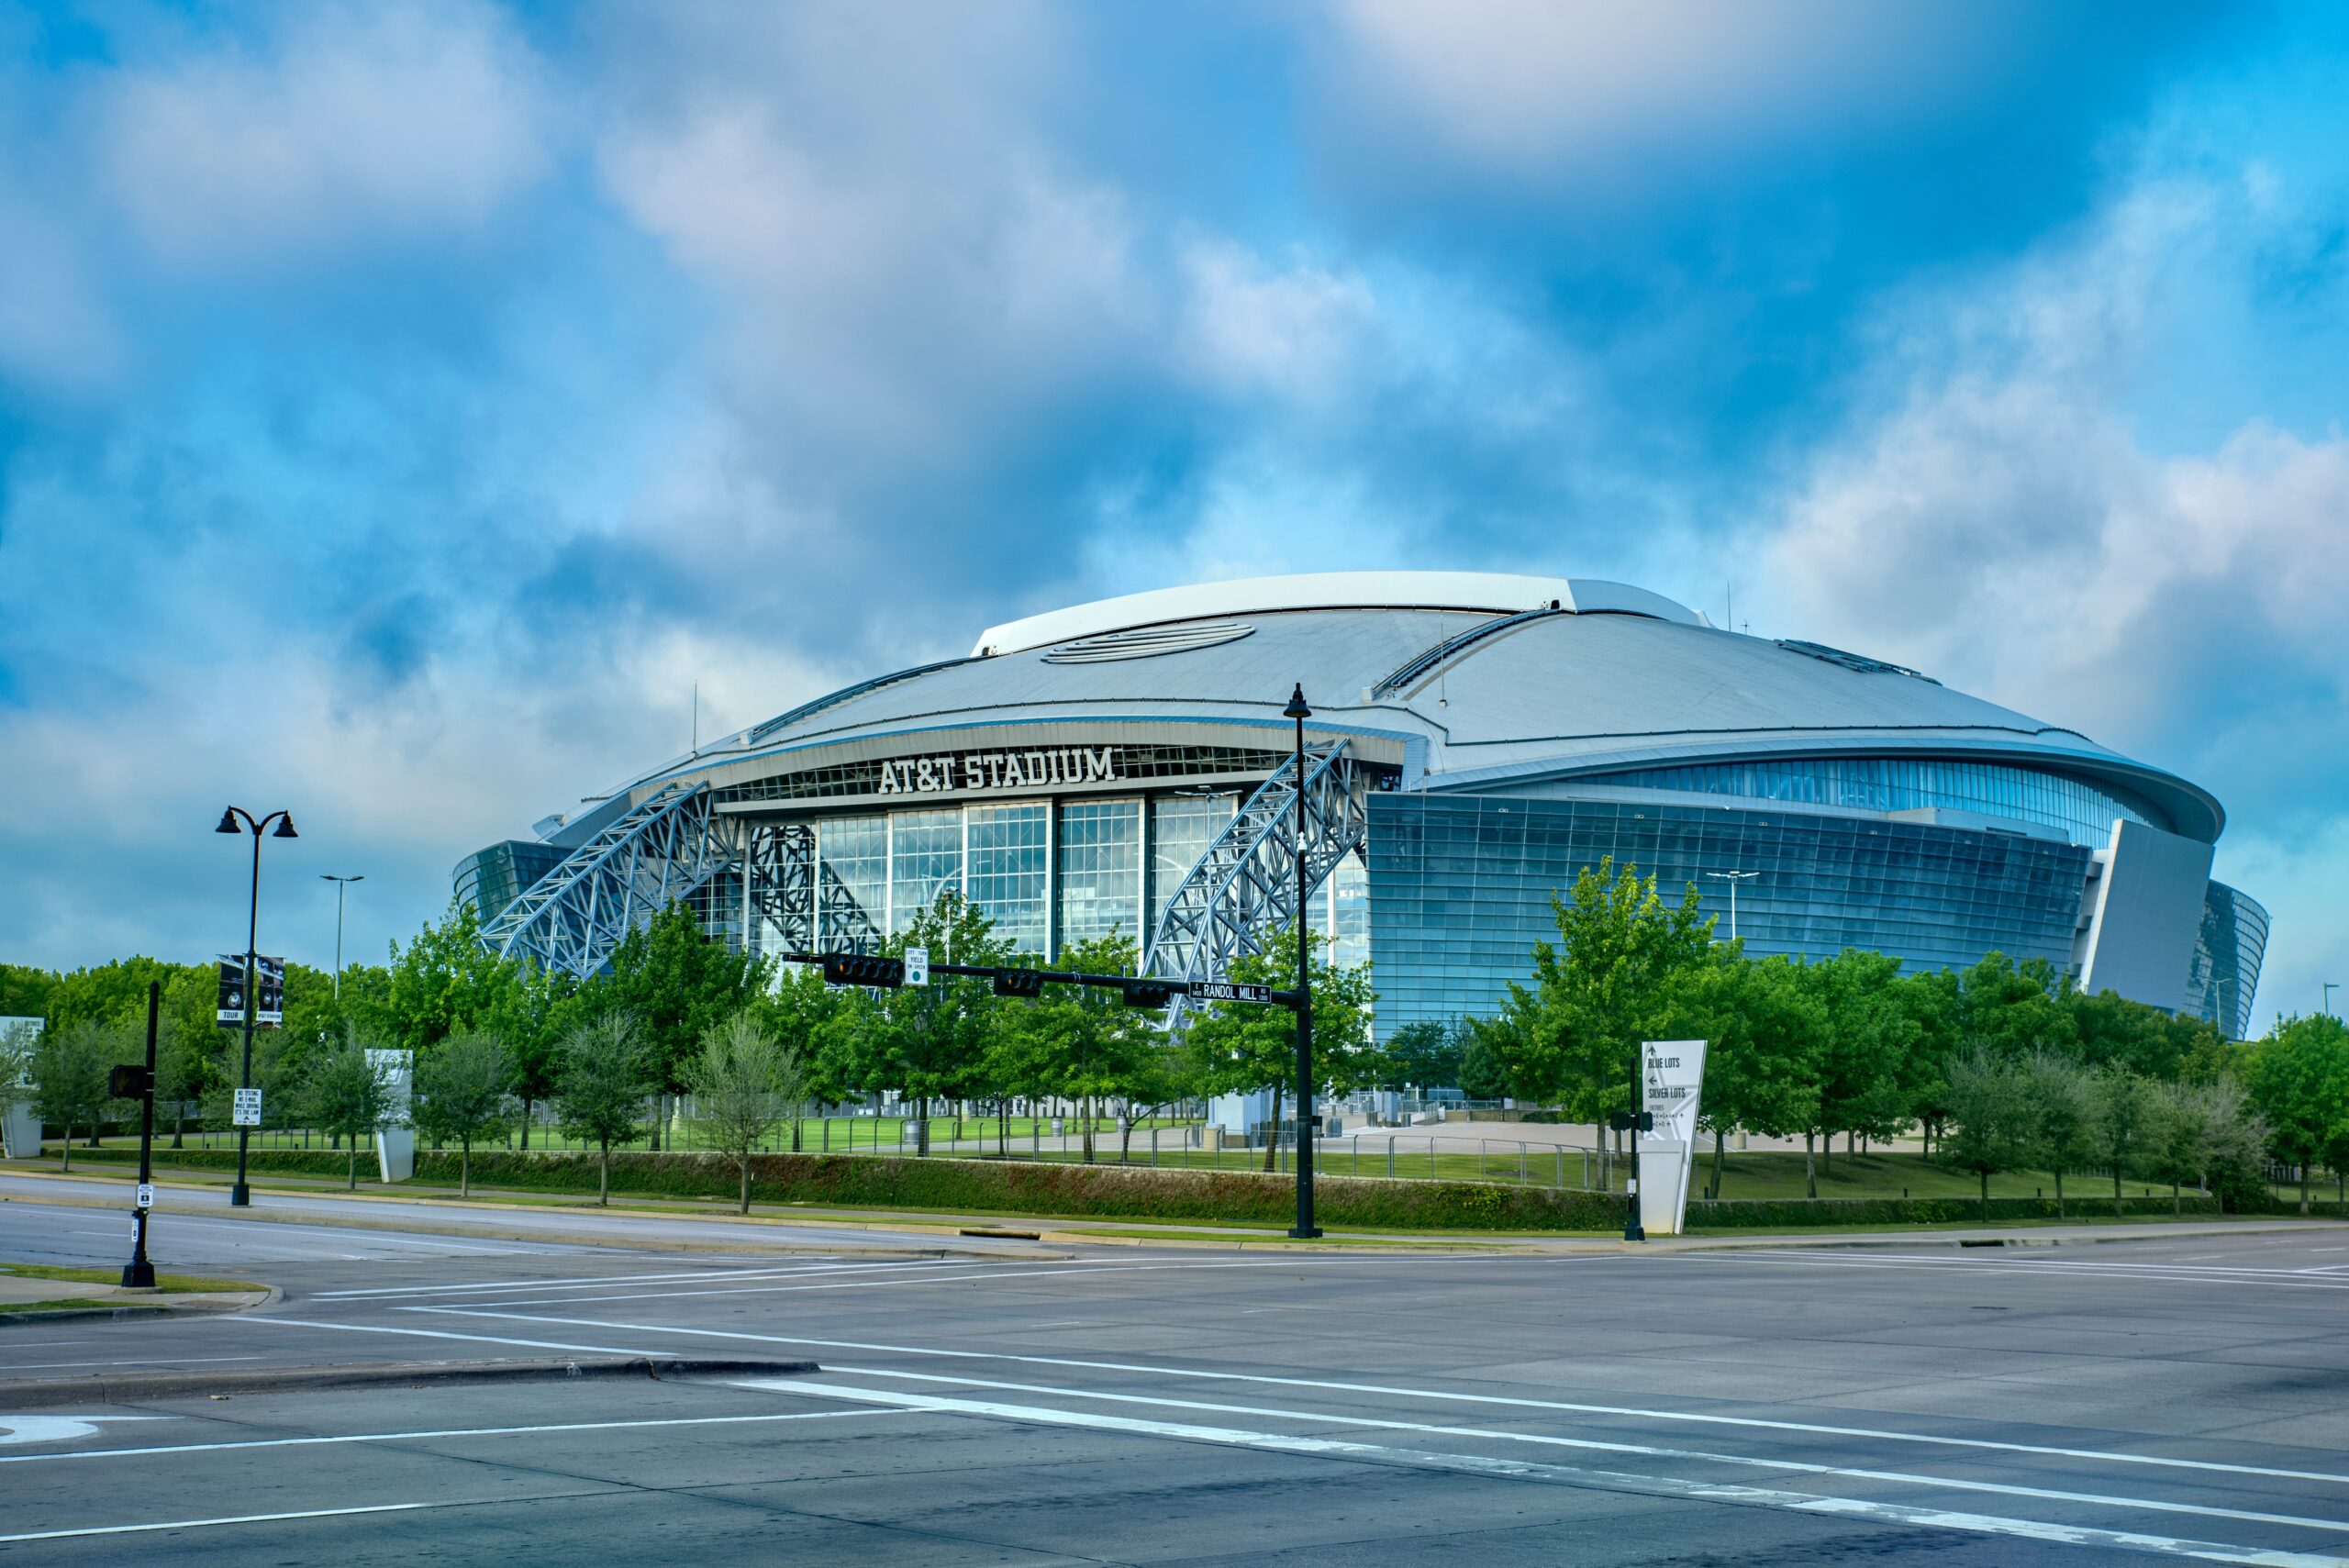 Quase todos os estádios da NFL impressionam pela beleza, mas alguns encantam mesmo é pelo tamanho. Veja as maiores arenas dos Estados Unidos.